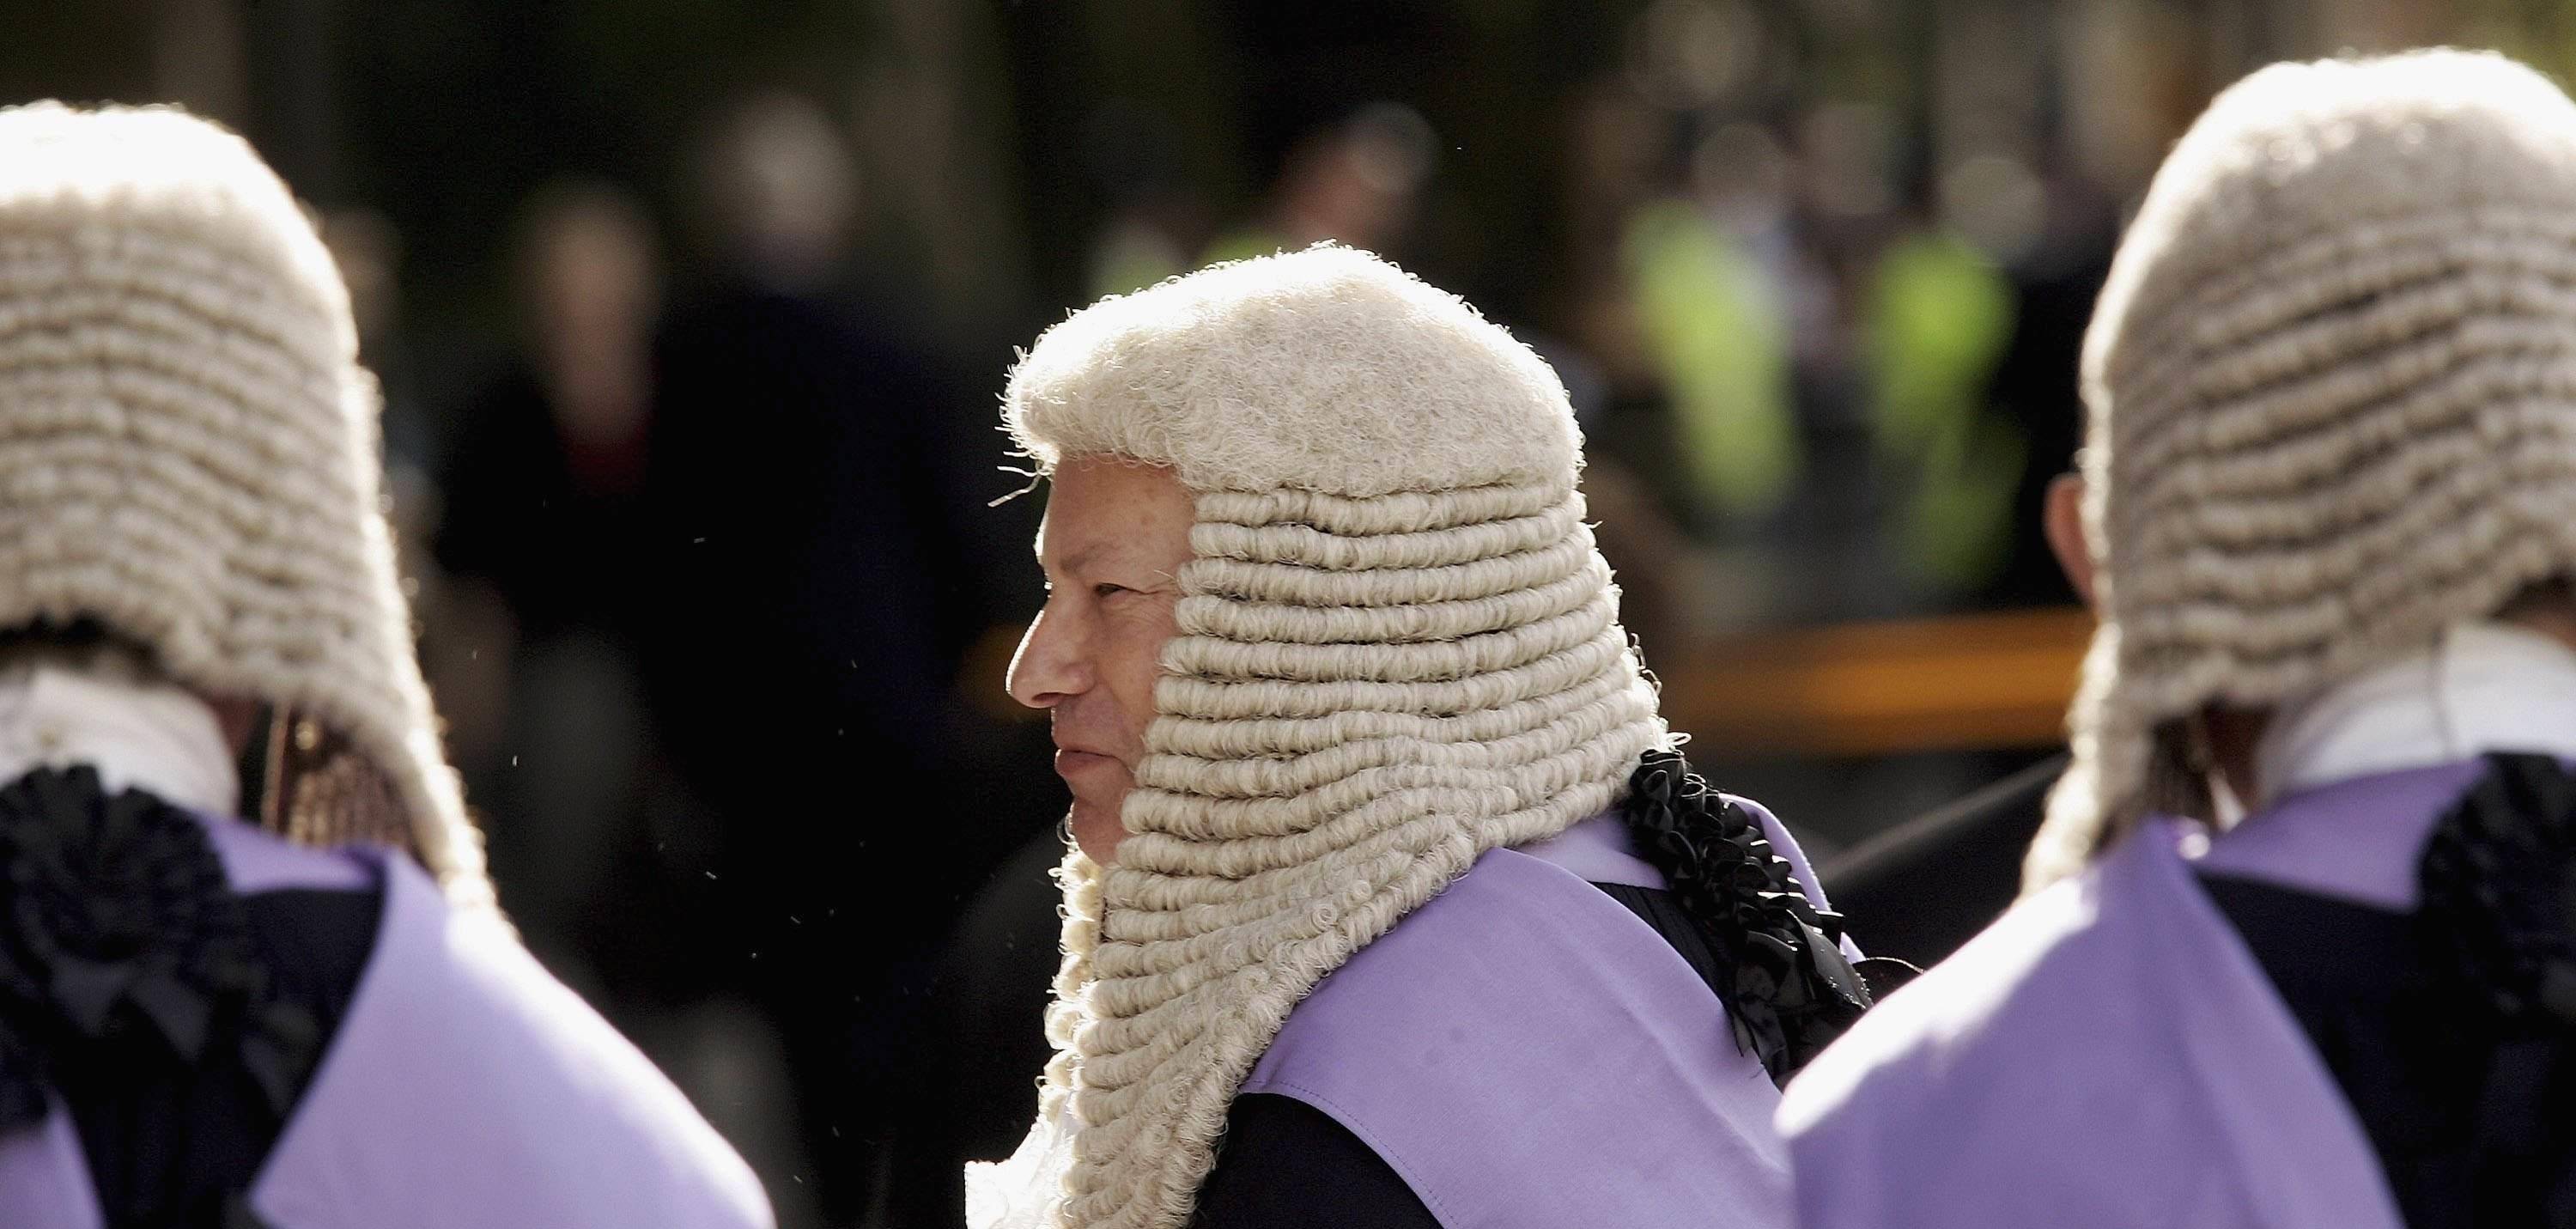 既不美观又不实用,为什么英国的法官要戴假发?有什么实际意义?